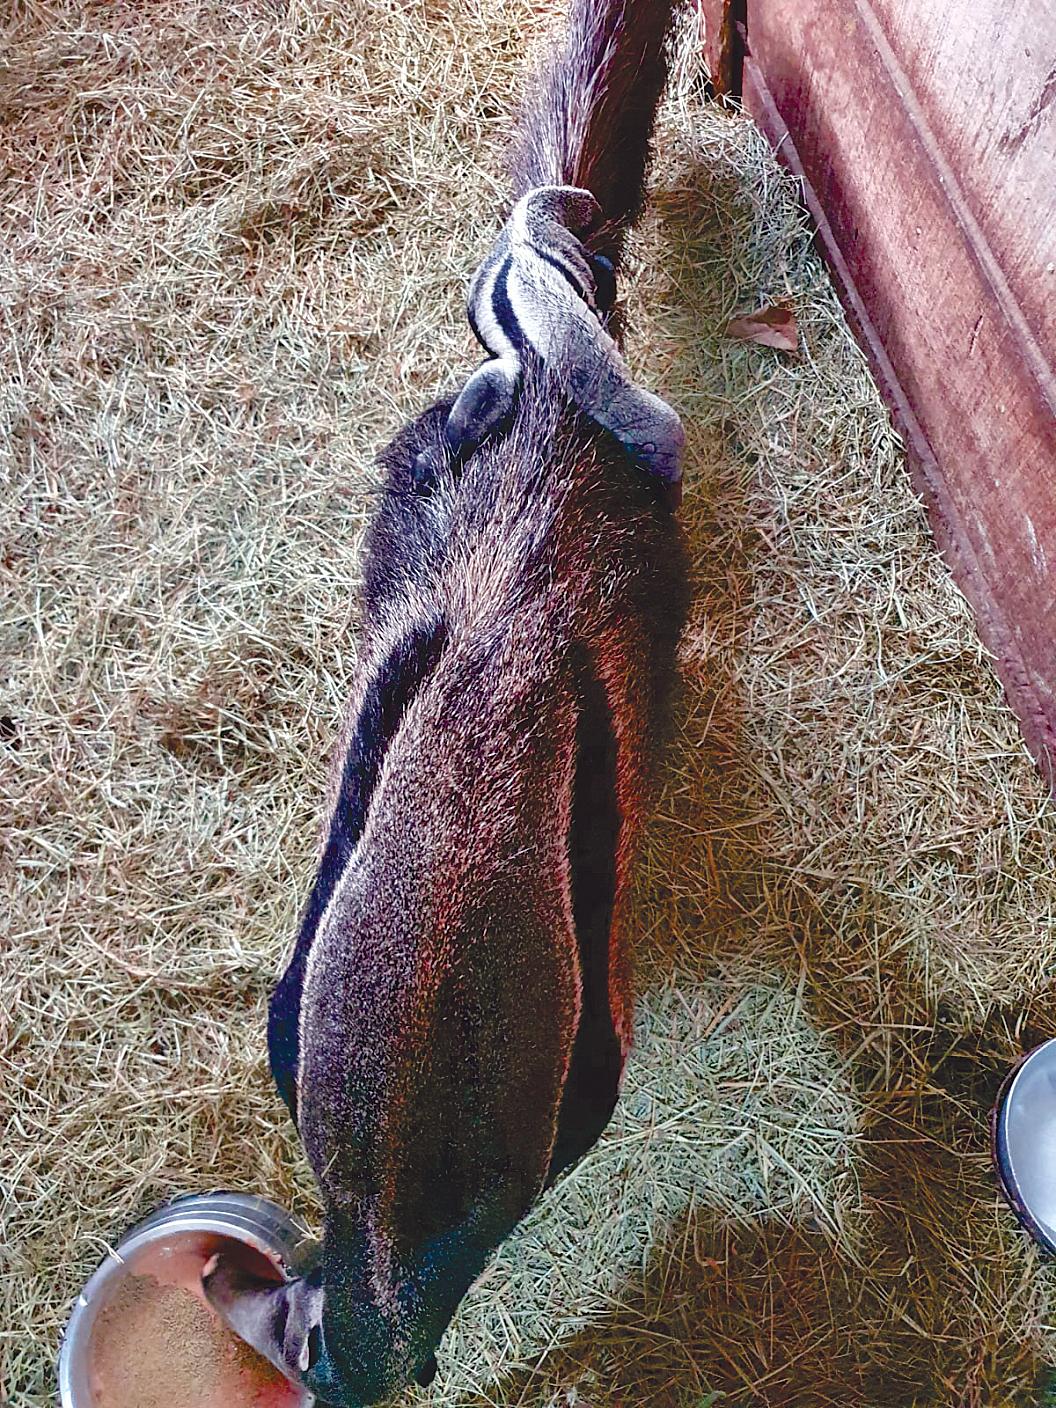 Filhote de tamanduá-bandeira nasce no Zooparque Itatiba